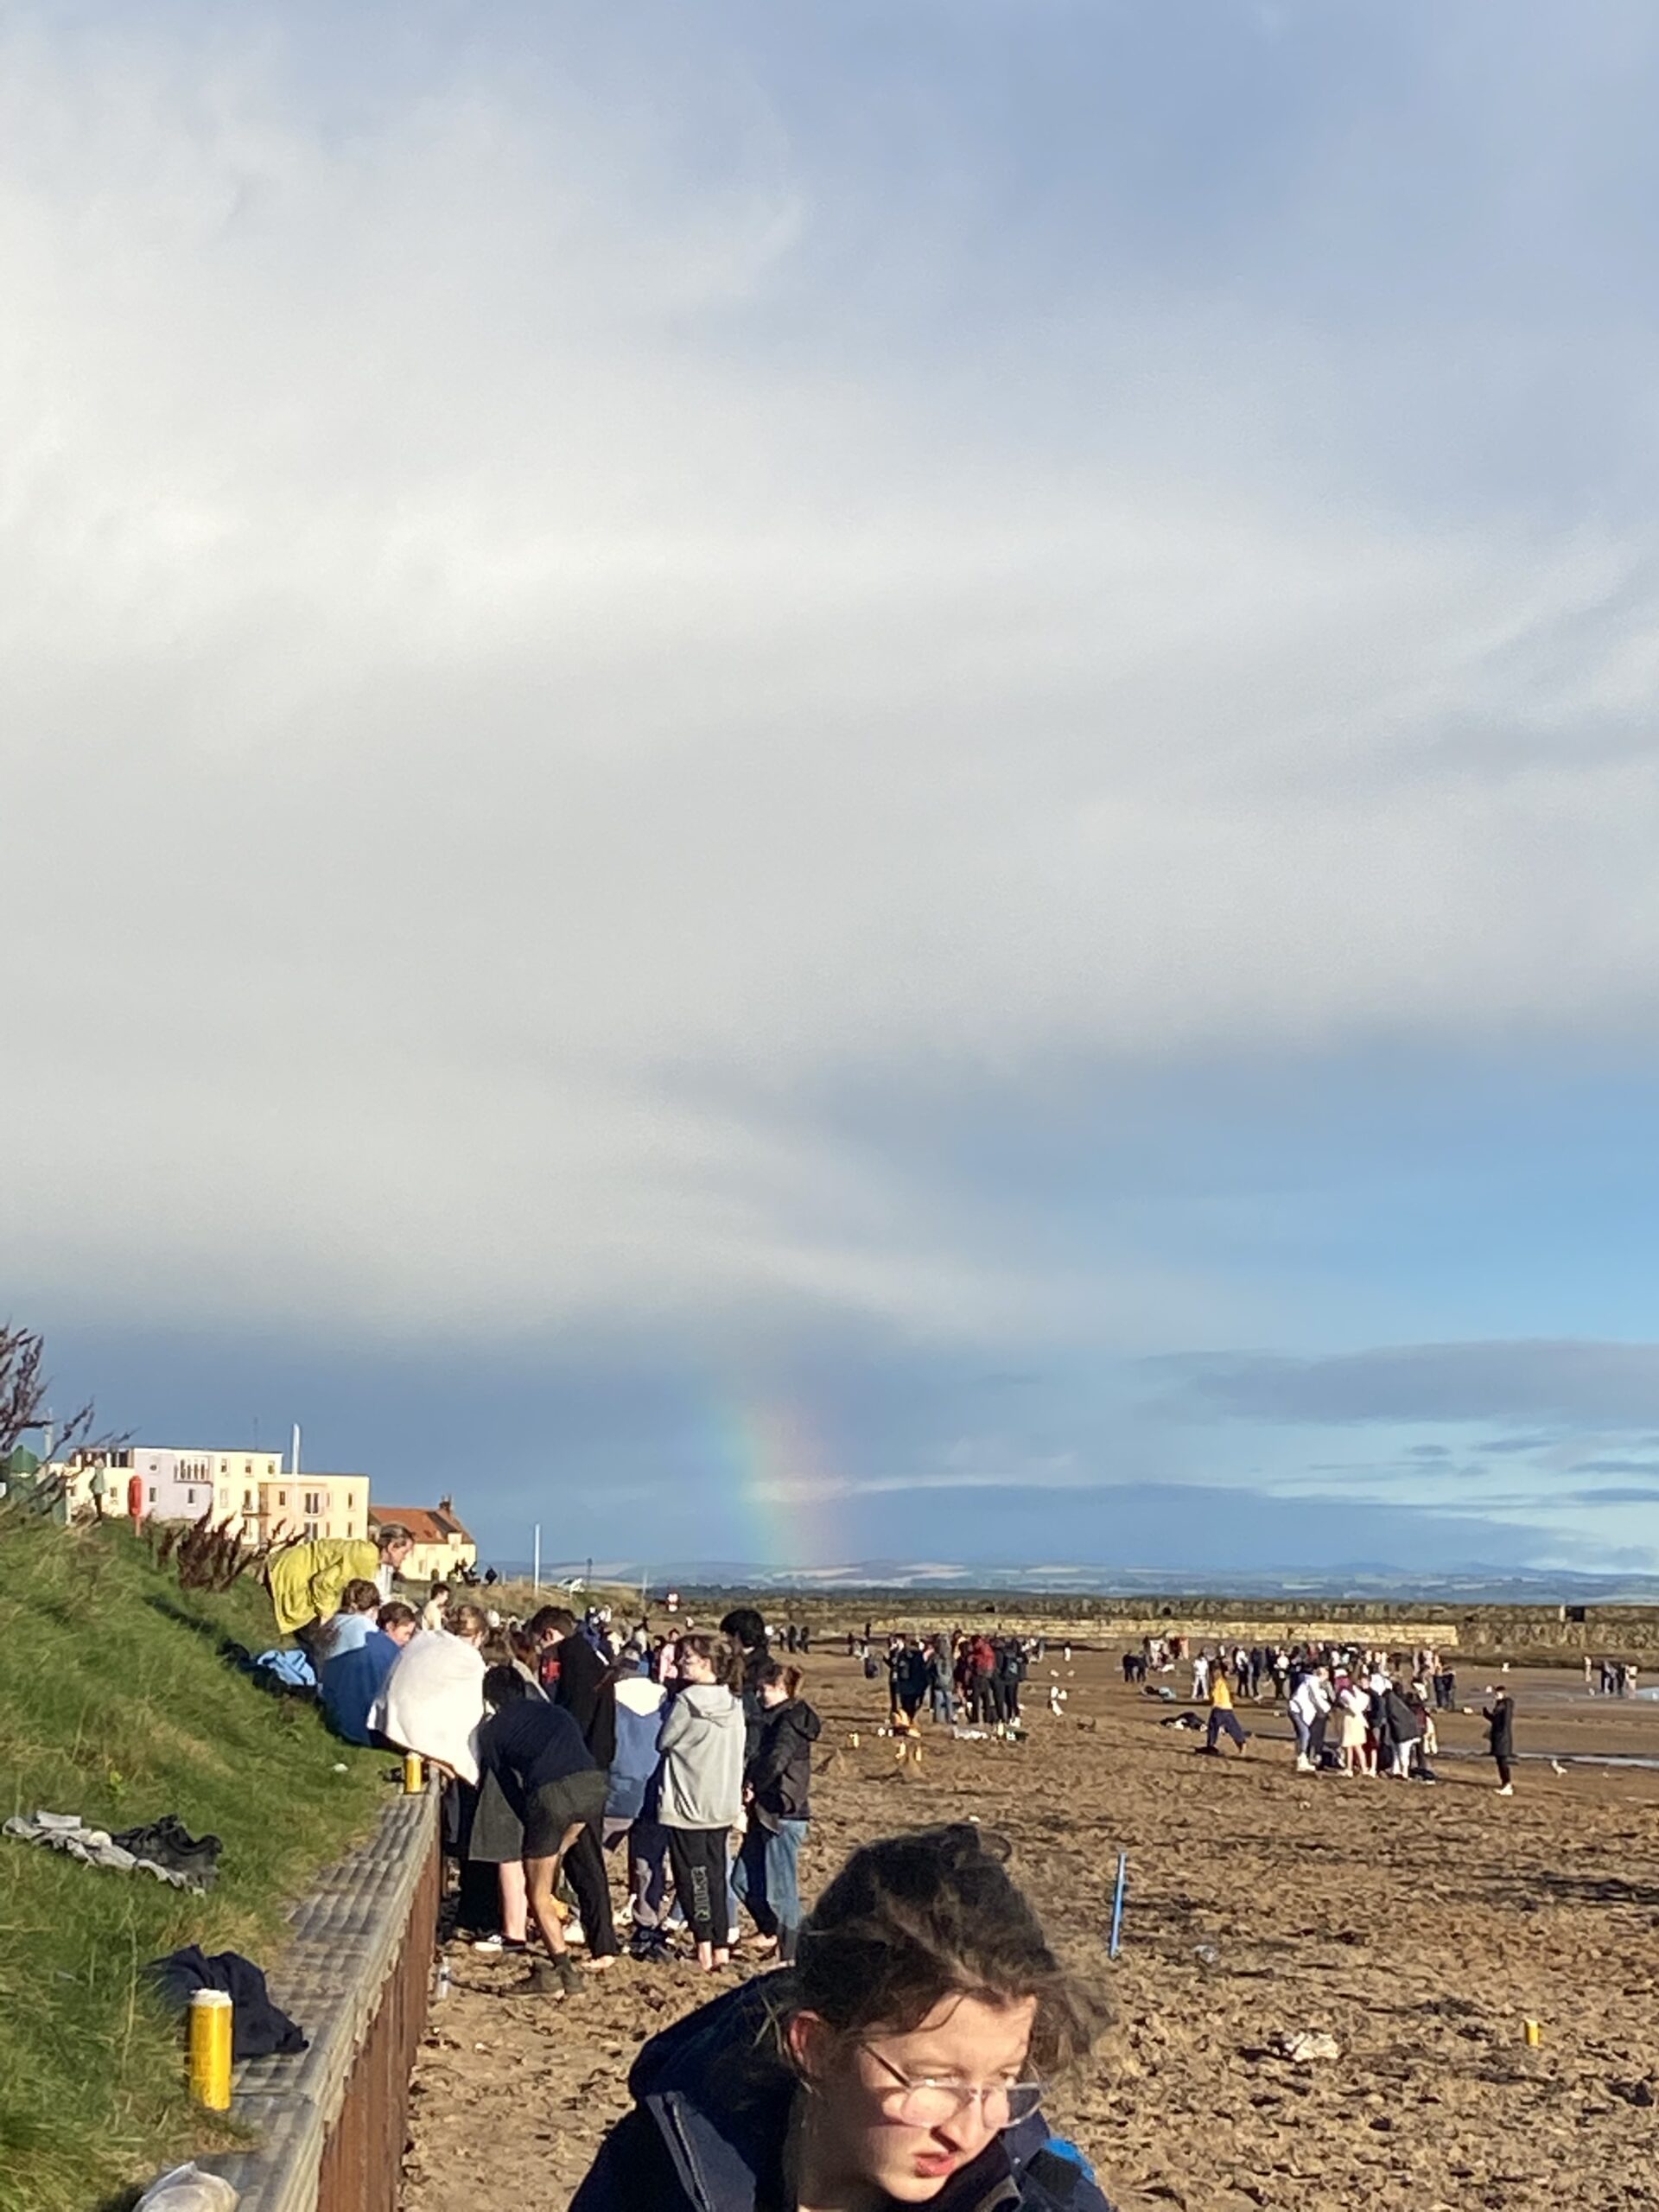 Rainbow over Beach